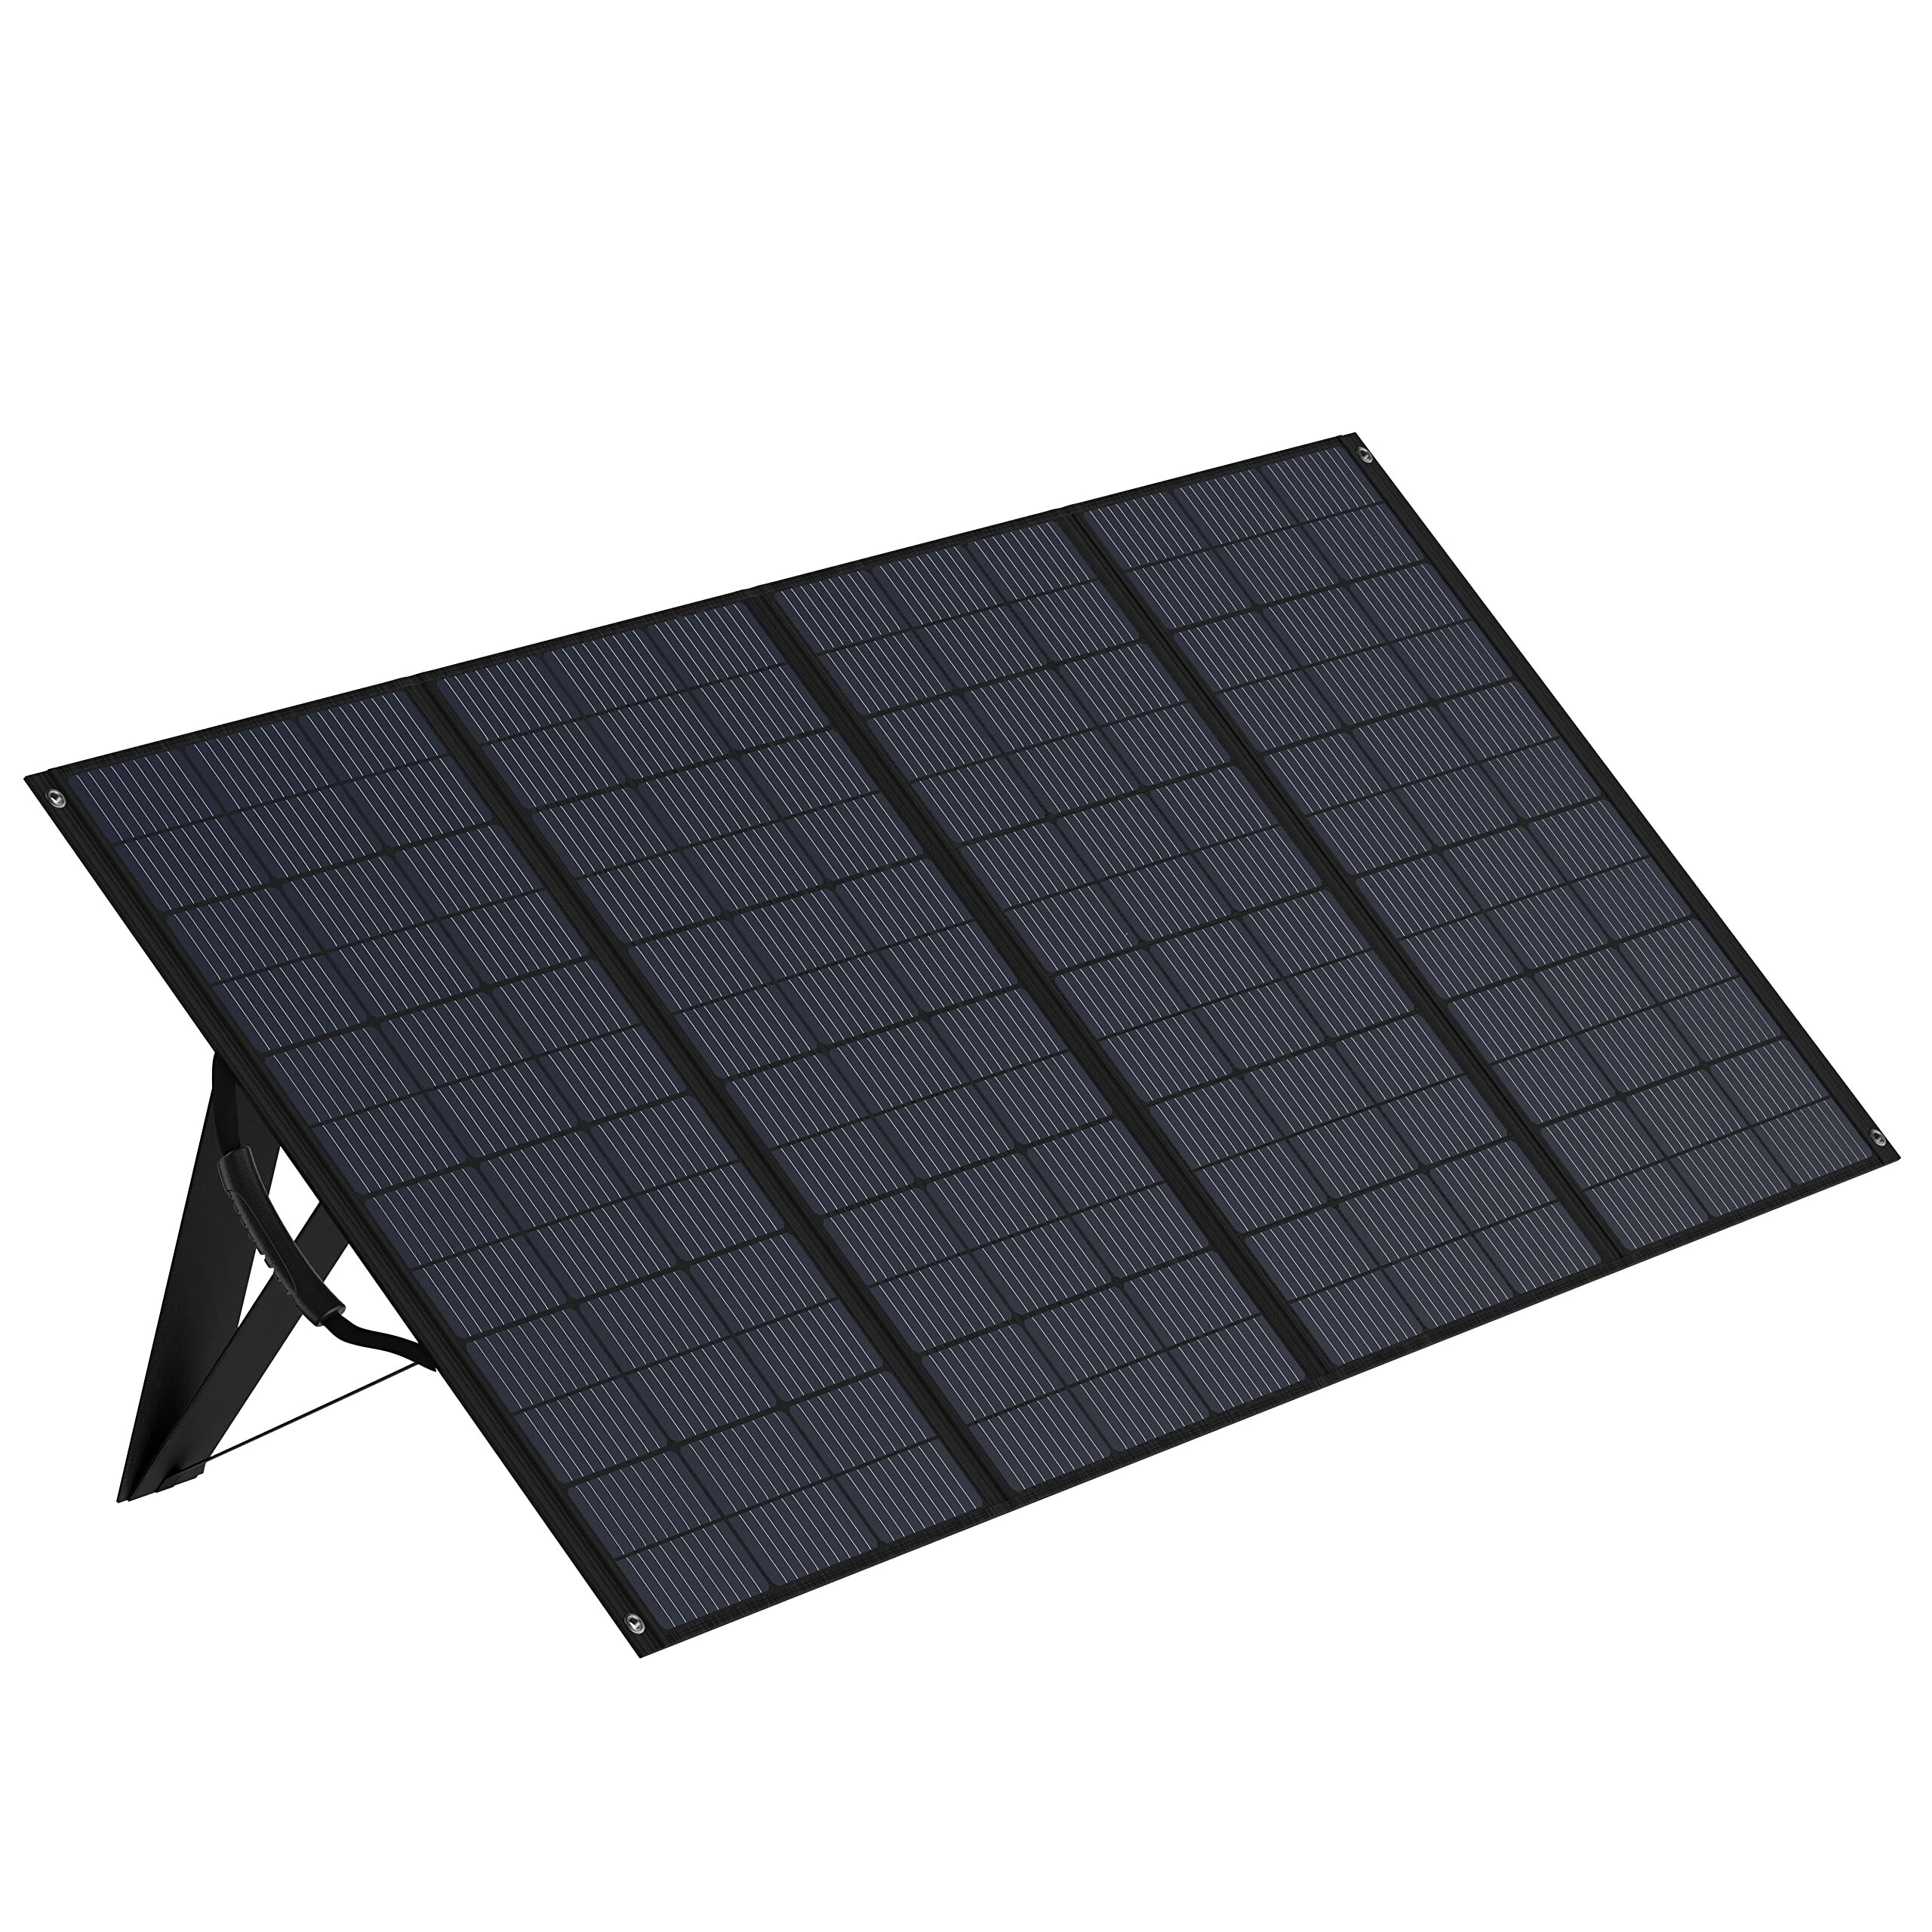 [ЕС Прямой] Zendure 400W Портативная солнечная панель с покрытием из ETFE, высокая эффективность 22%, класс защиты IP65, многоконтактный выходной разъем, солнечное зарядное устройство для активного отдыха на открытом воздухе, аварийного питания, путешествий на фургоне и солнечного генератора